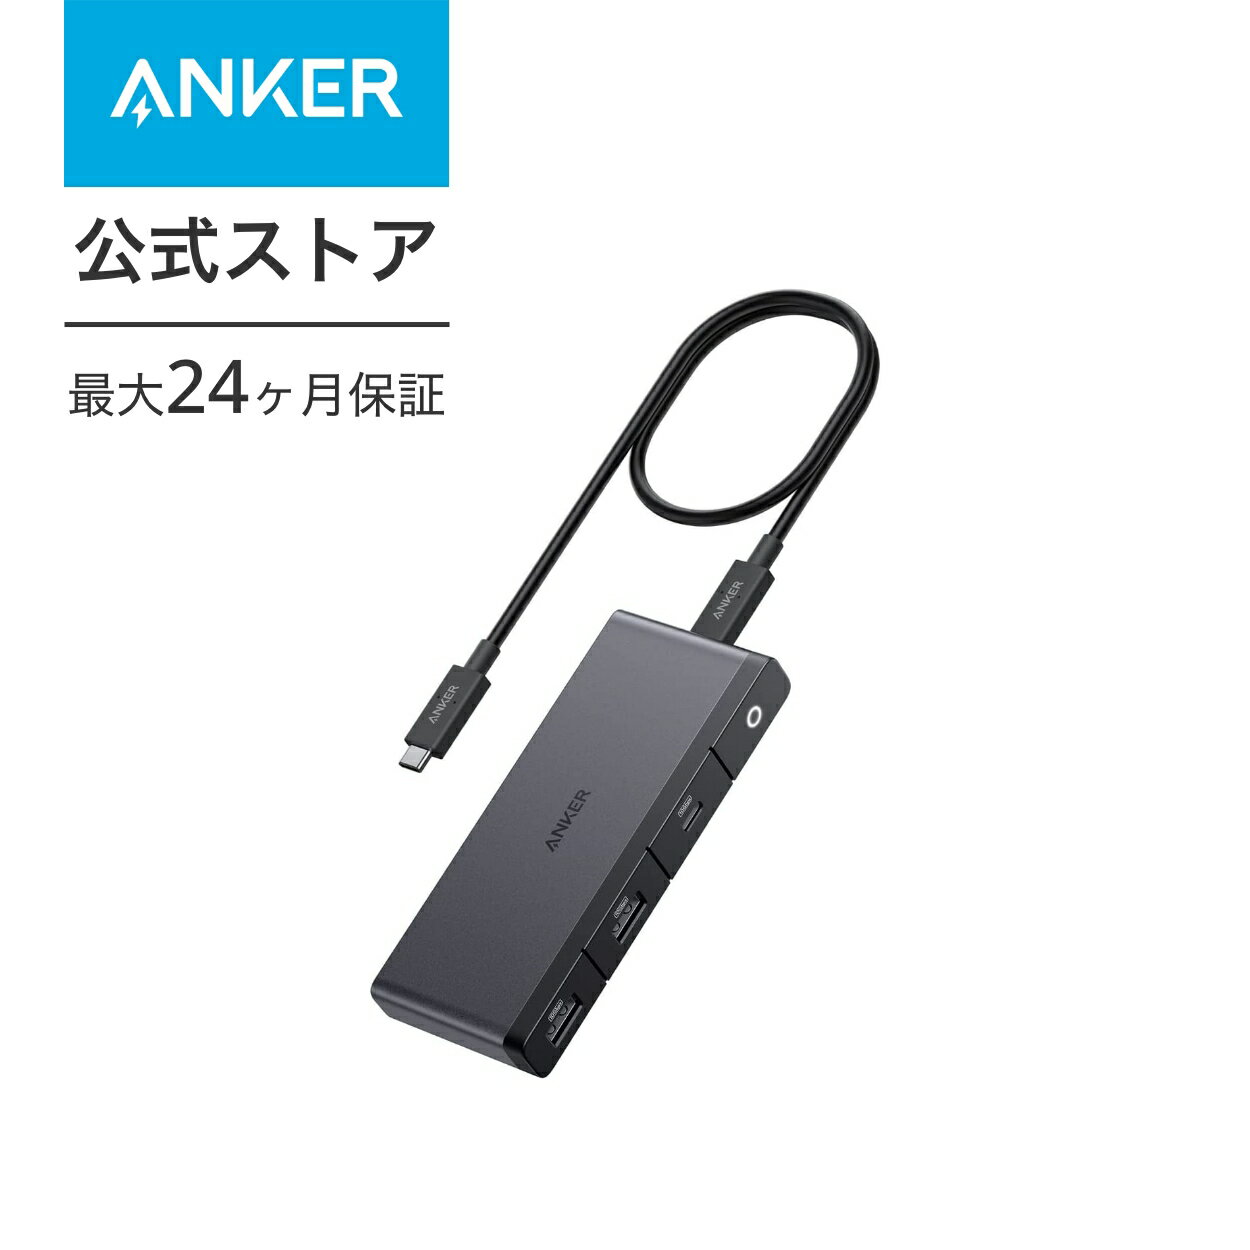 Anker 556 USB-C ハブ (8-in-1, USB4) 8K HDMIポート DisplayPort 10Gbps 高速データ転送 100W USB PD対応 約50cm 着脱式ケーブル USB 3.2 Gen 2 USB-Cポート USB-Aポート イーサネットポート搭載